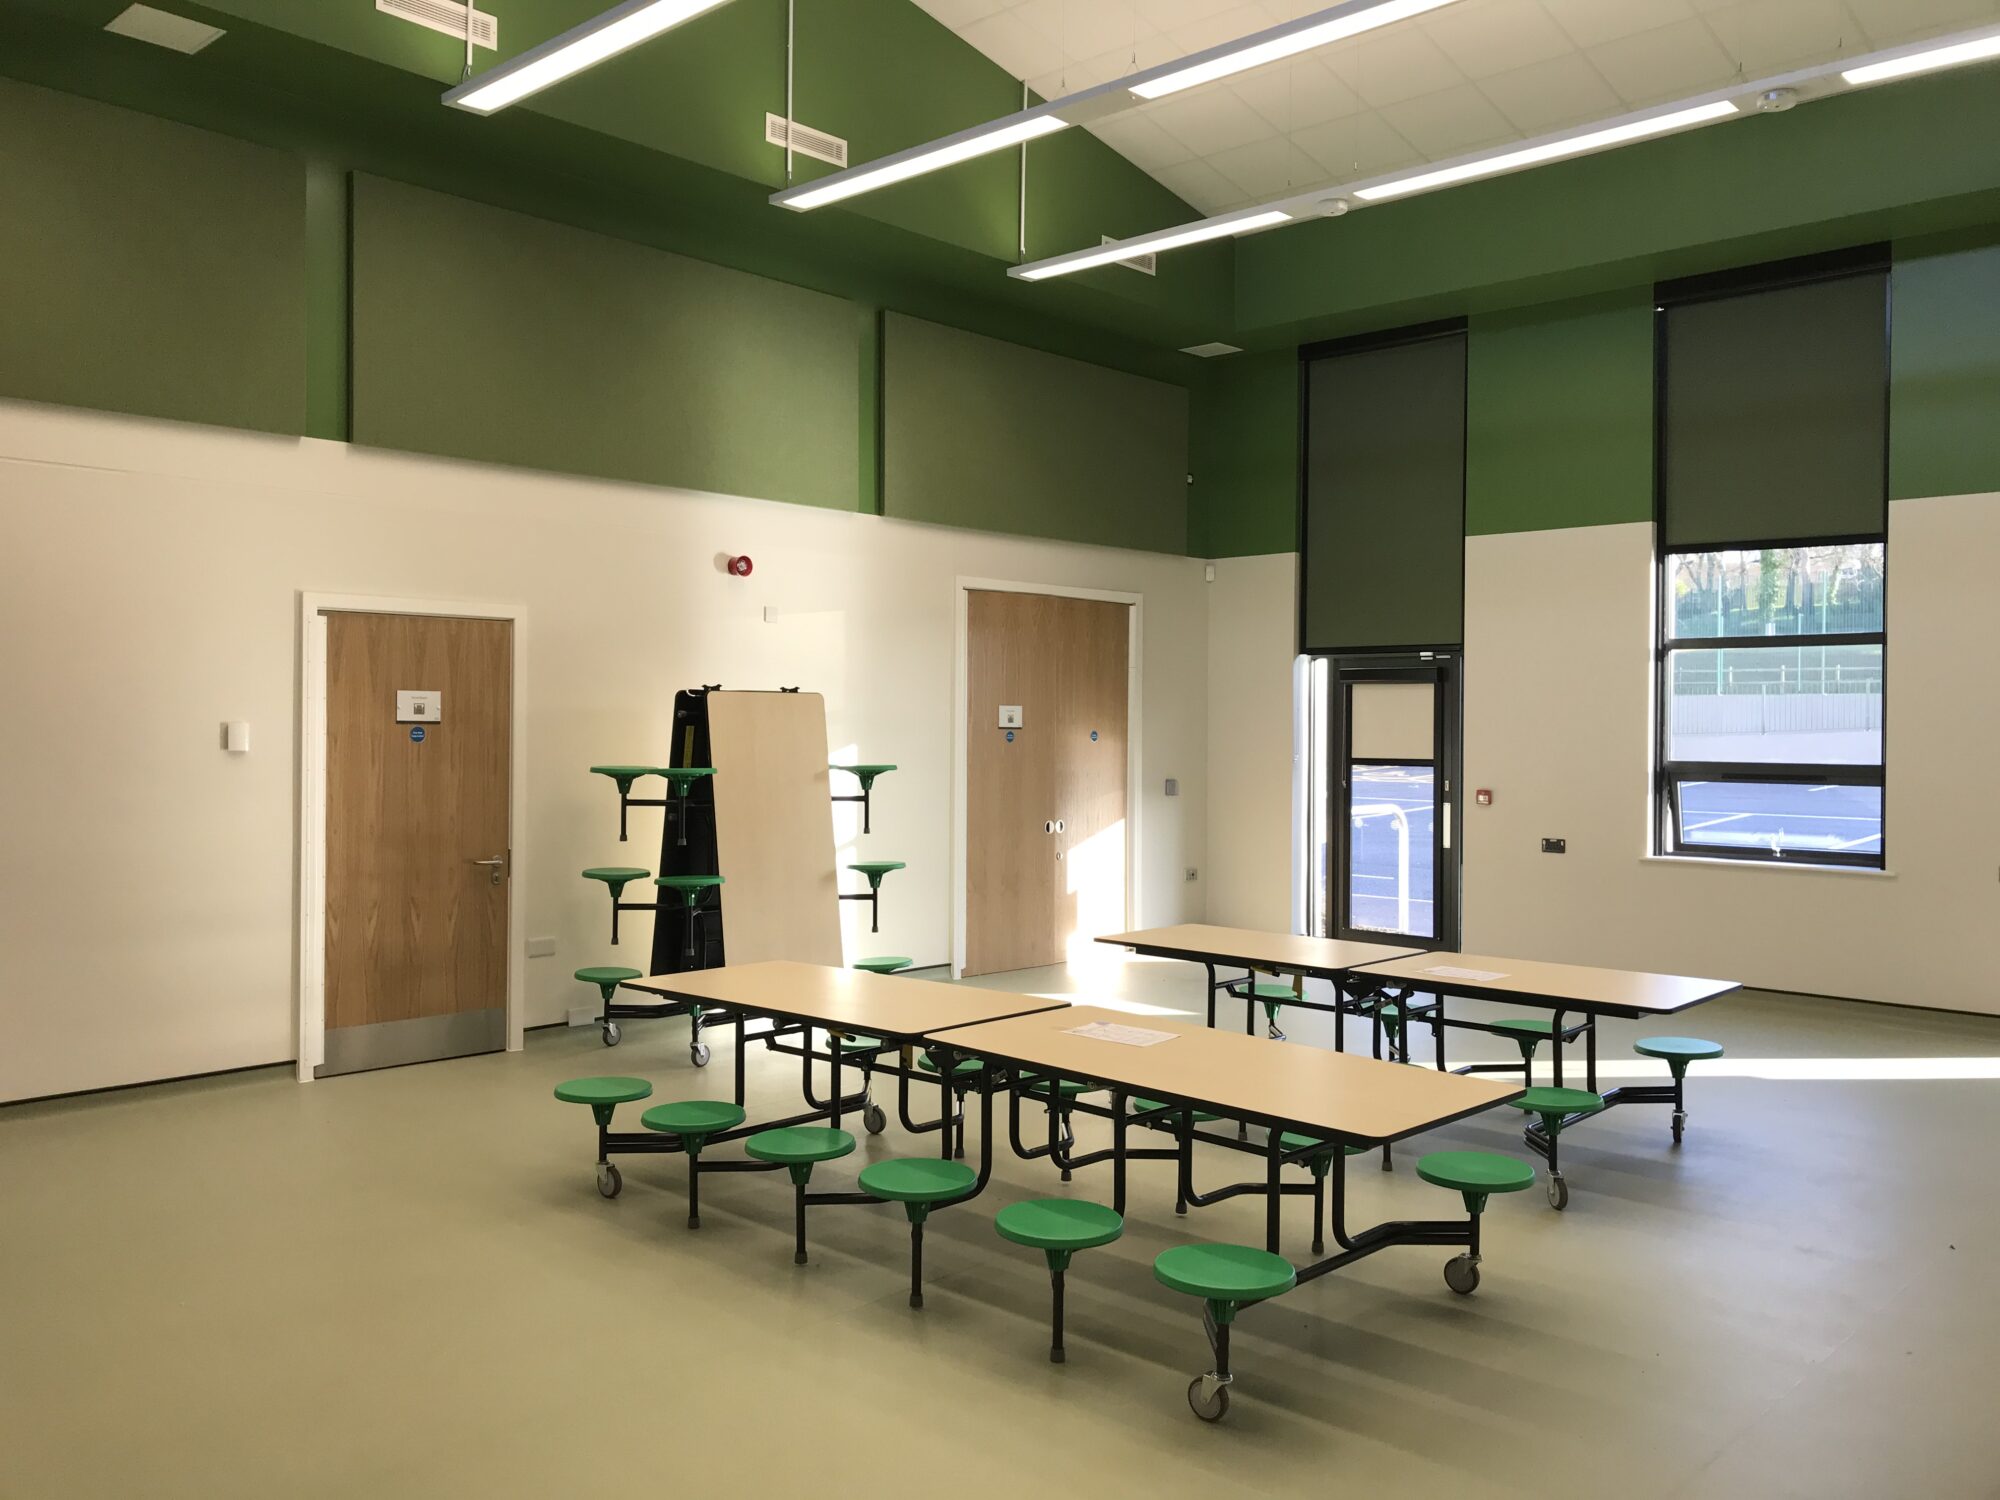 Glendinning Academy internal view